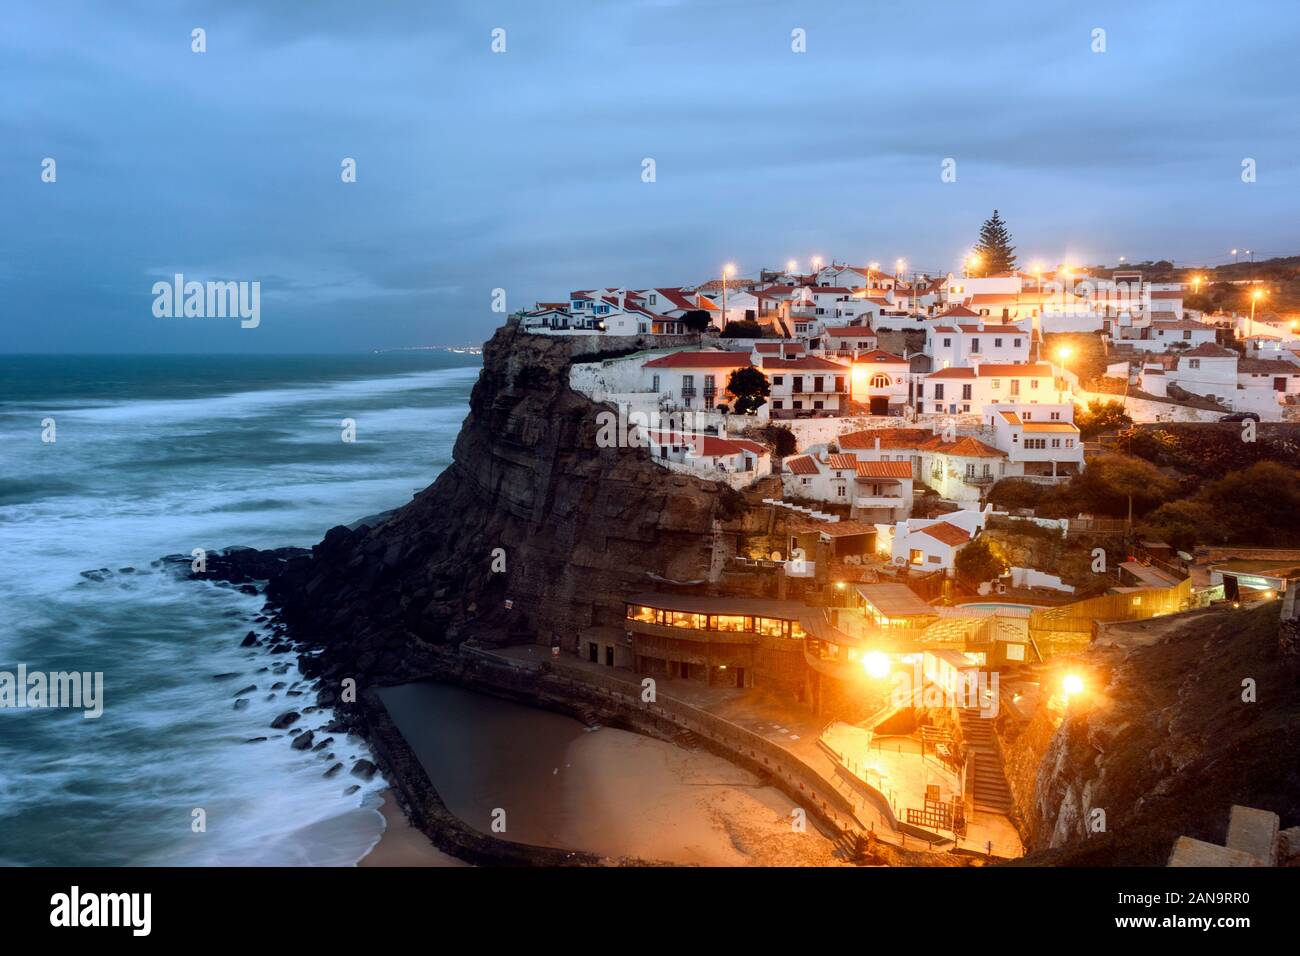 Bellissimo villaggio costiero con piscina sul mare durante la stagione fredda, Azenhas do Mar, Portogallo Foto Stock